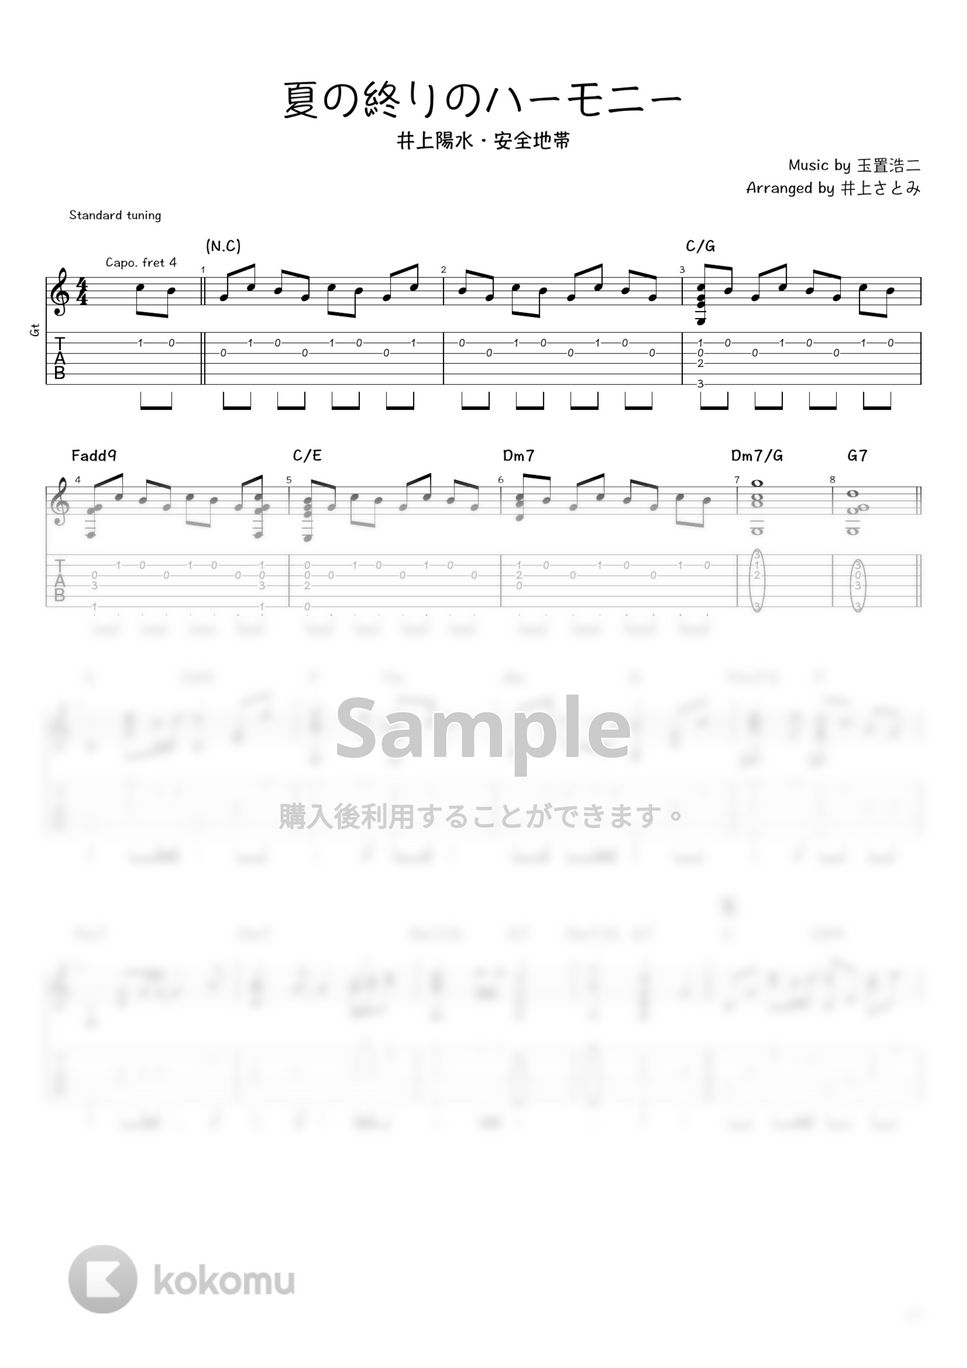 井上陽水・安全地帯 - 夏の終りのハーモニー (ソロギター / タブ譜) by 井上さとみ